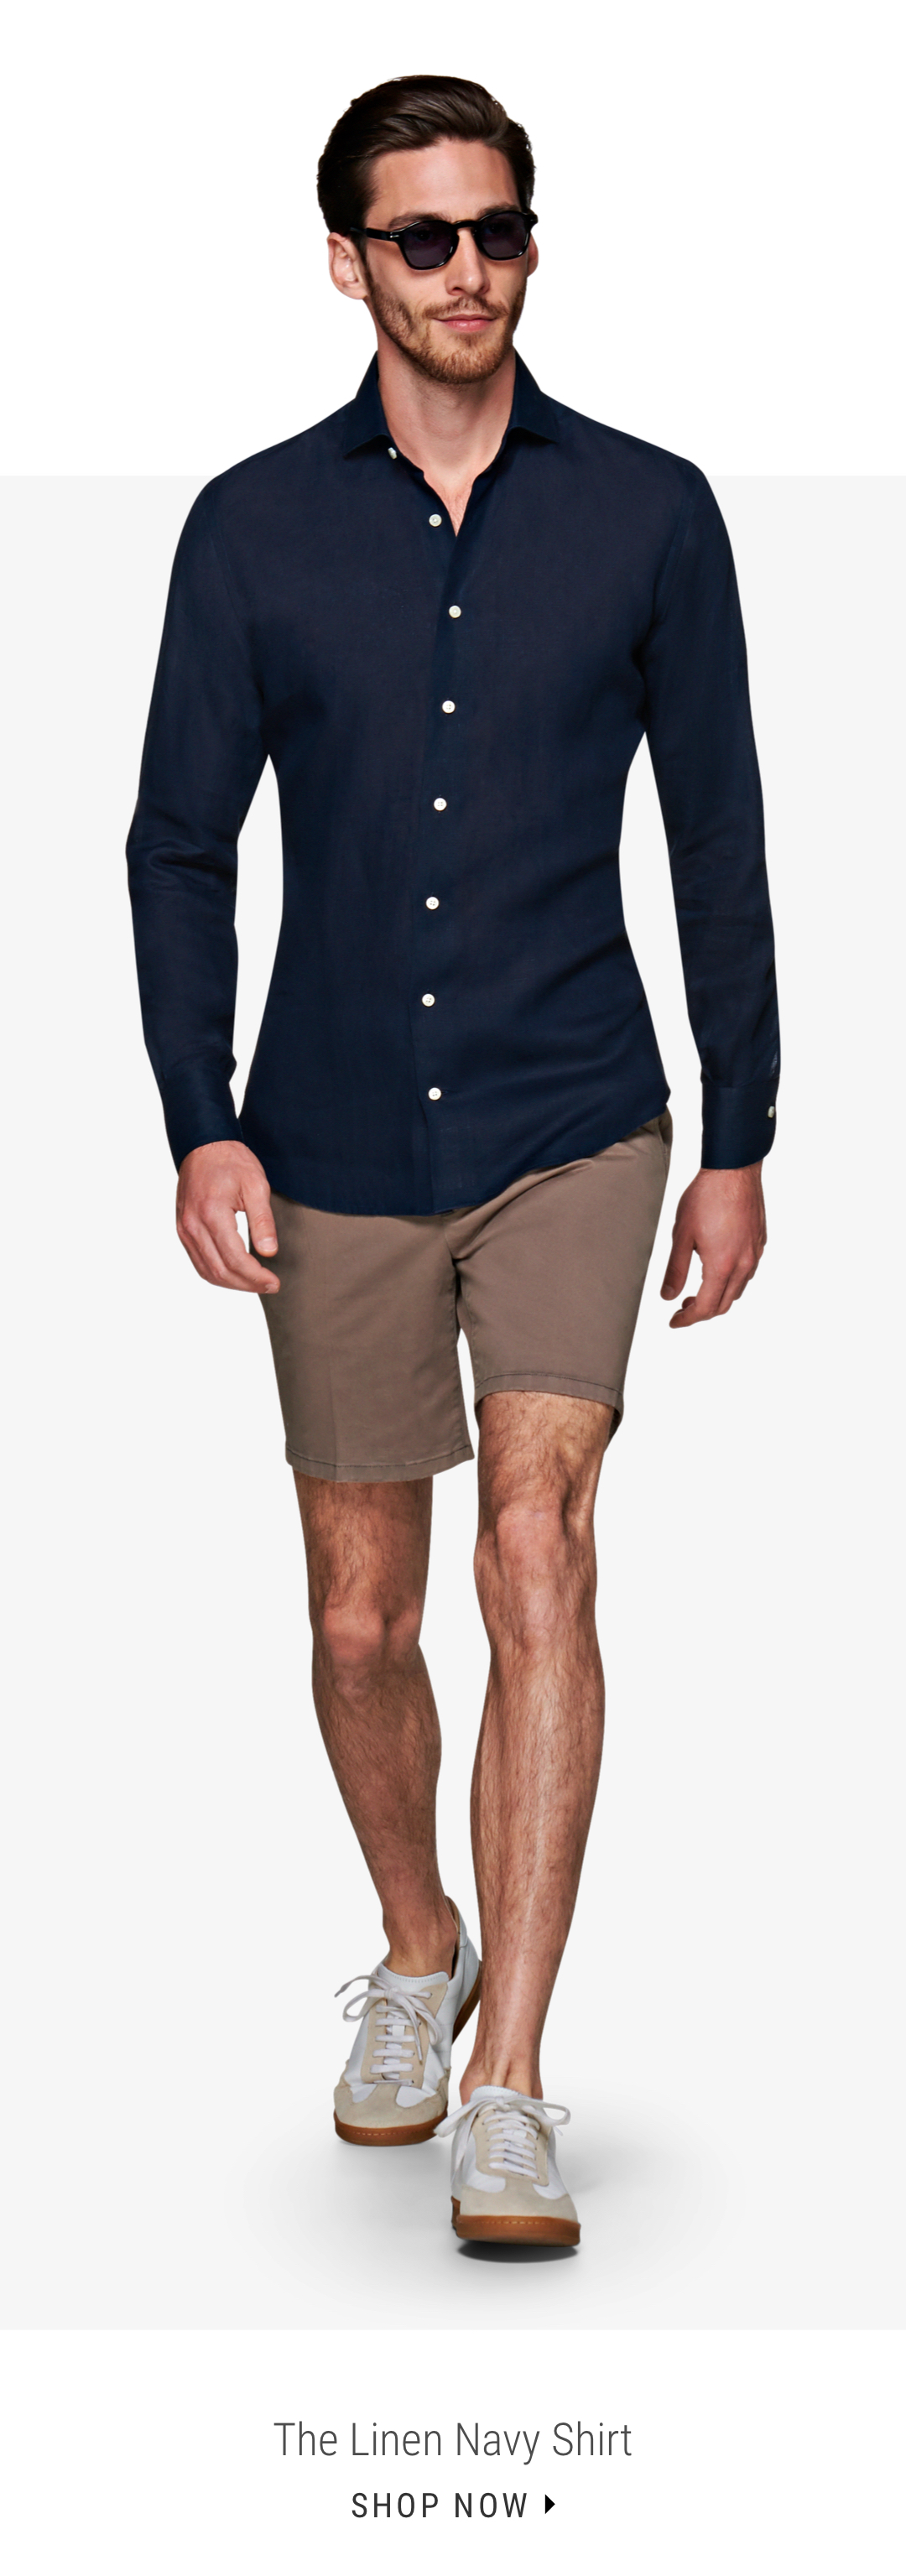 The Linen Navy Shirt | Shop Now